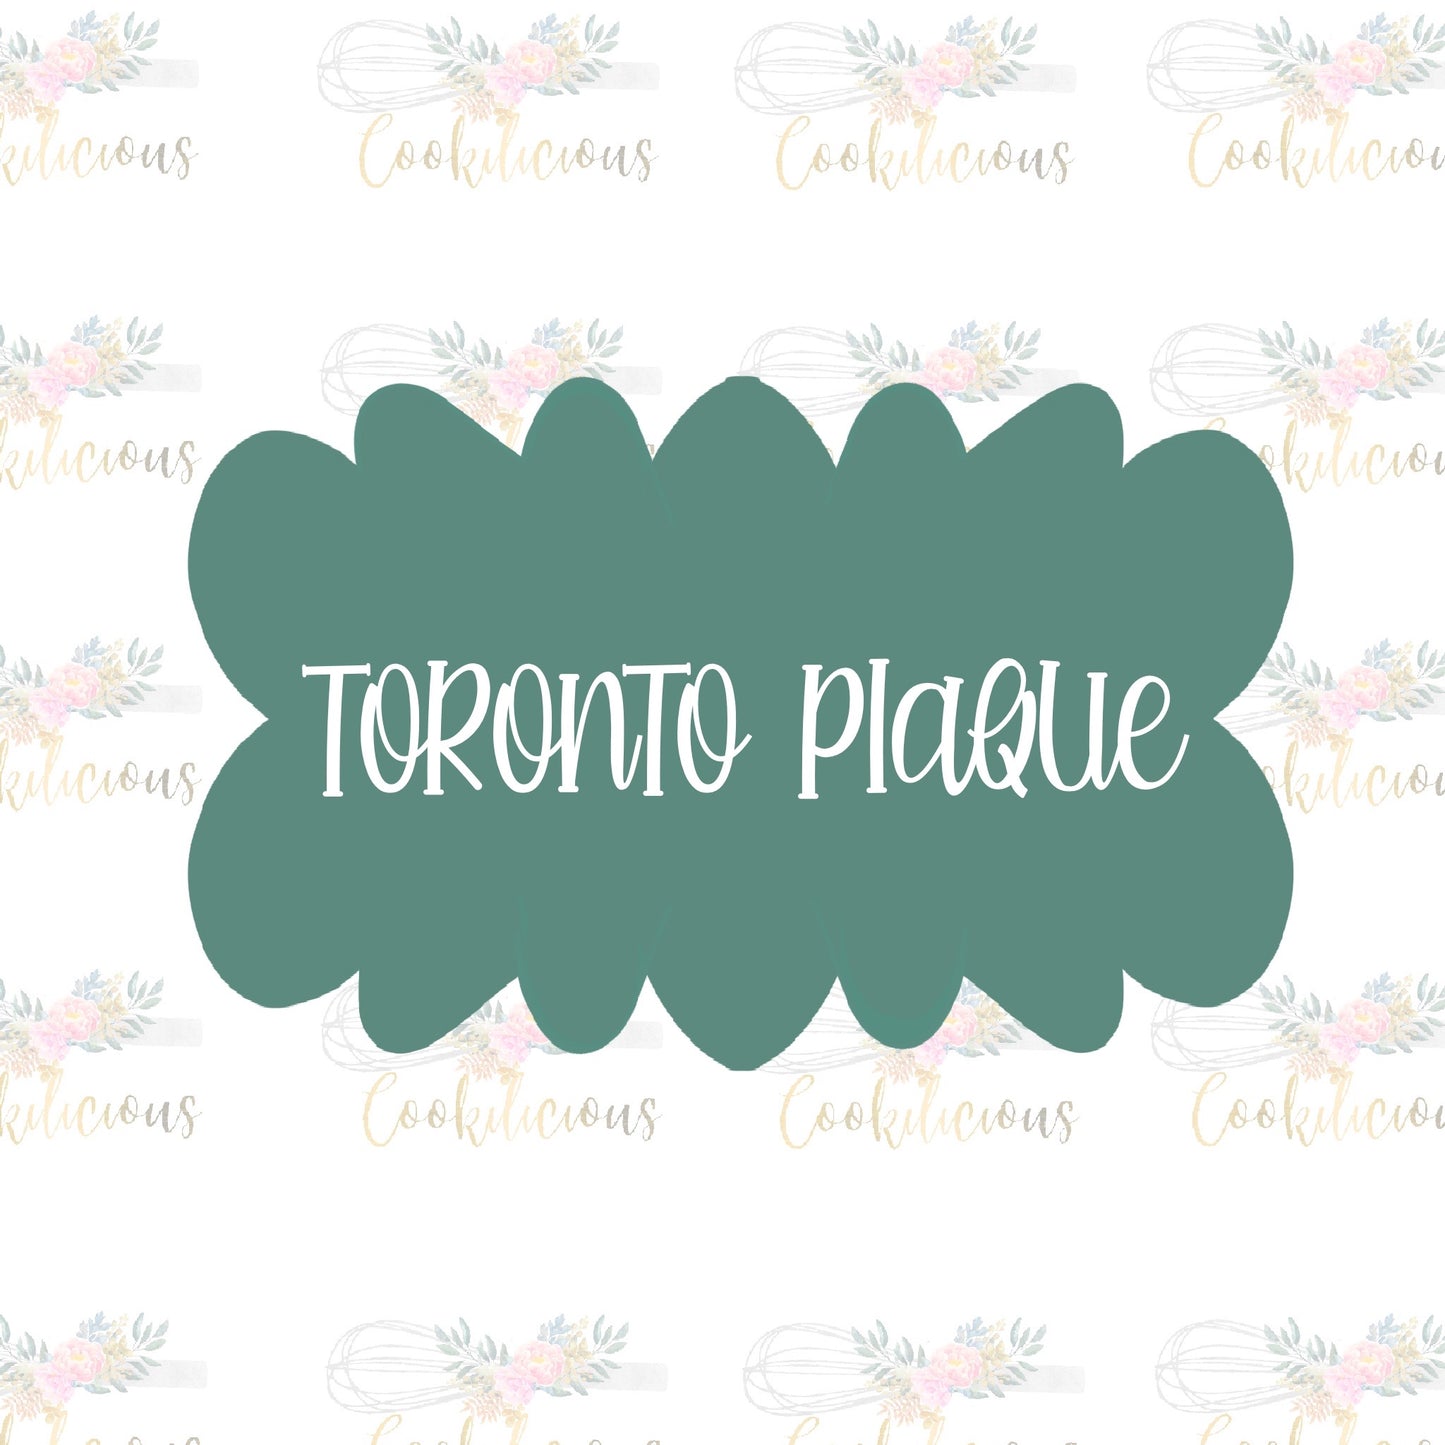 Toronto Plaque